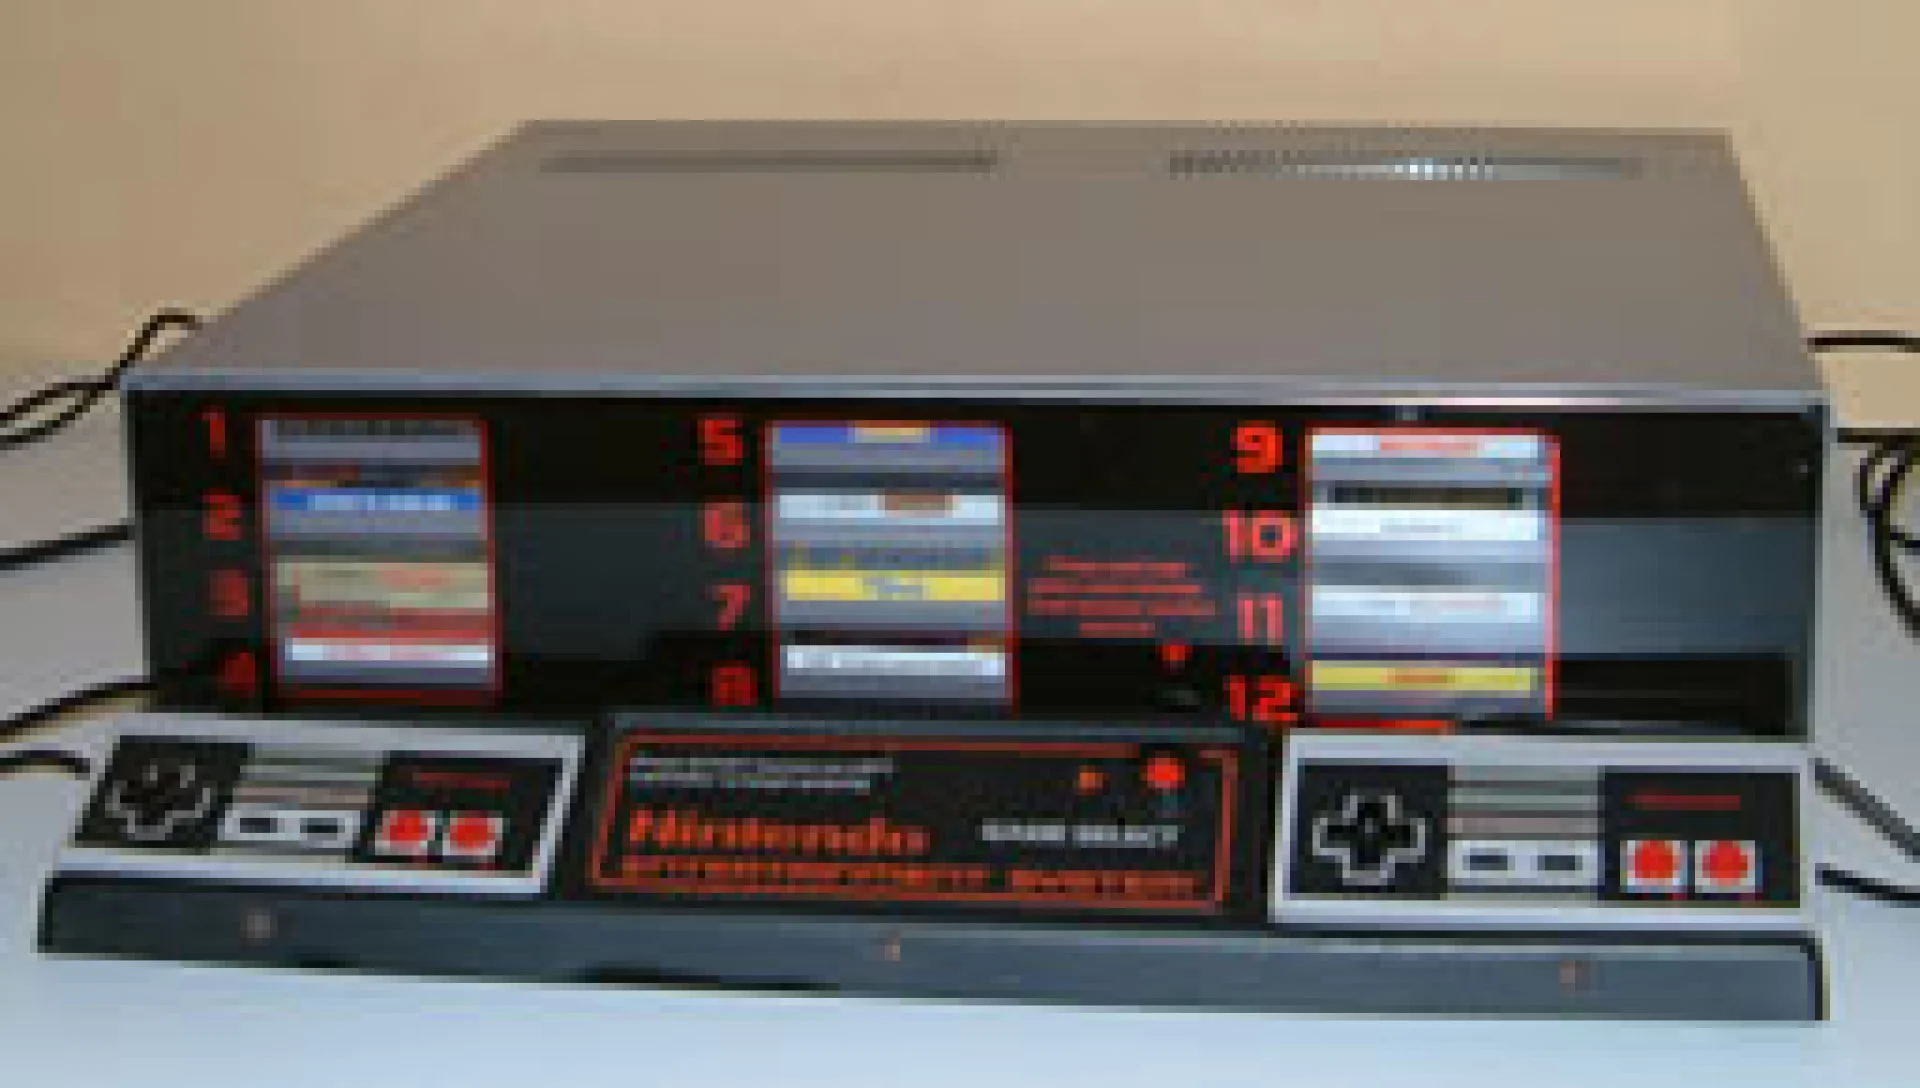 NES M82 Kiosk